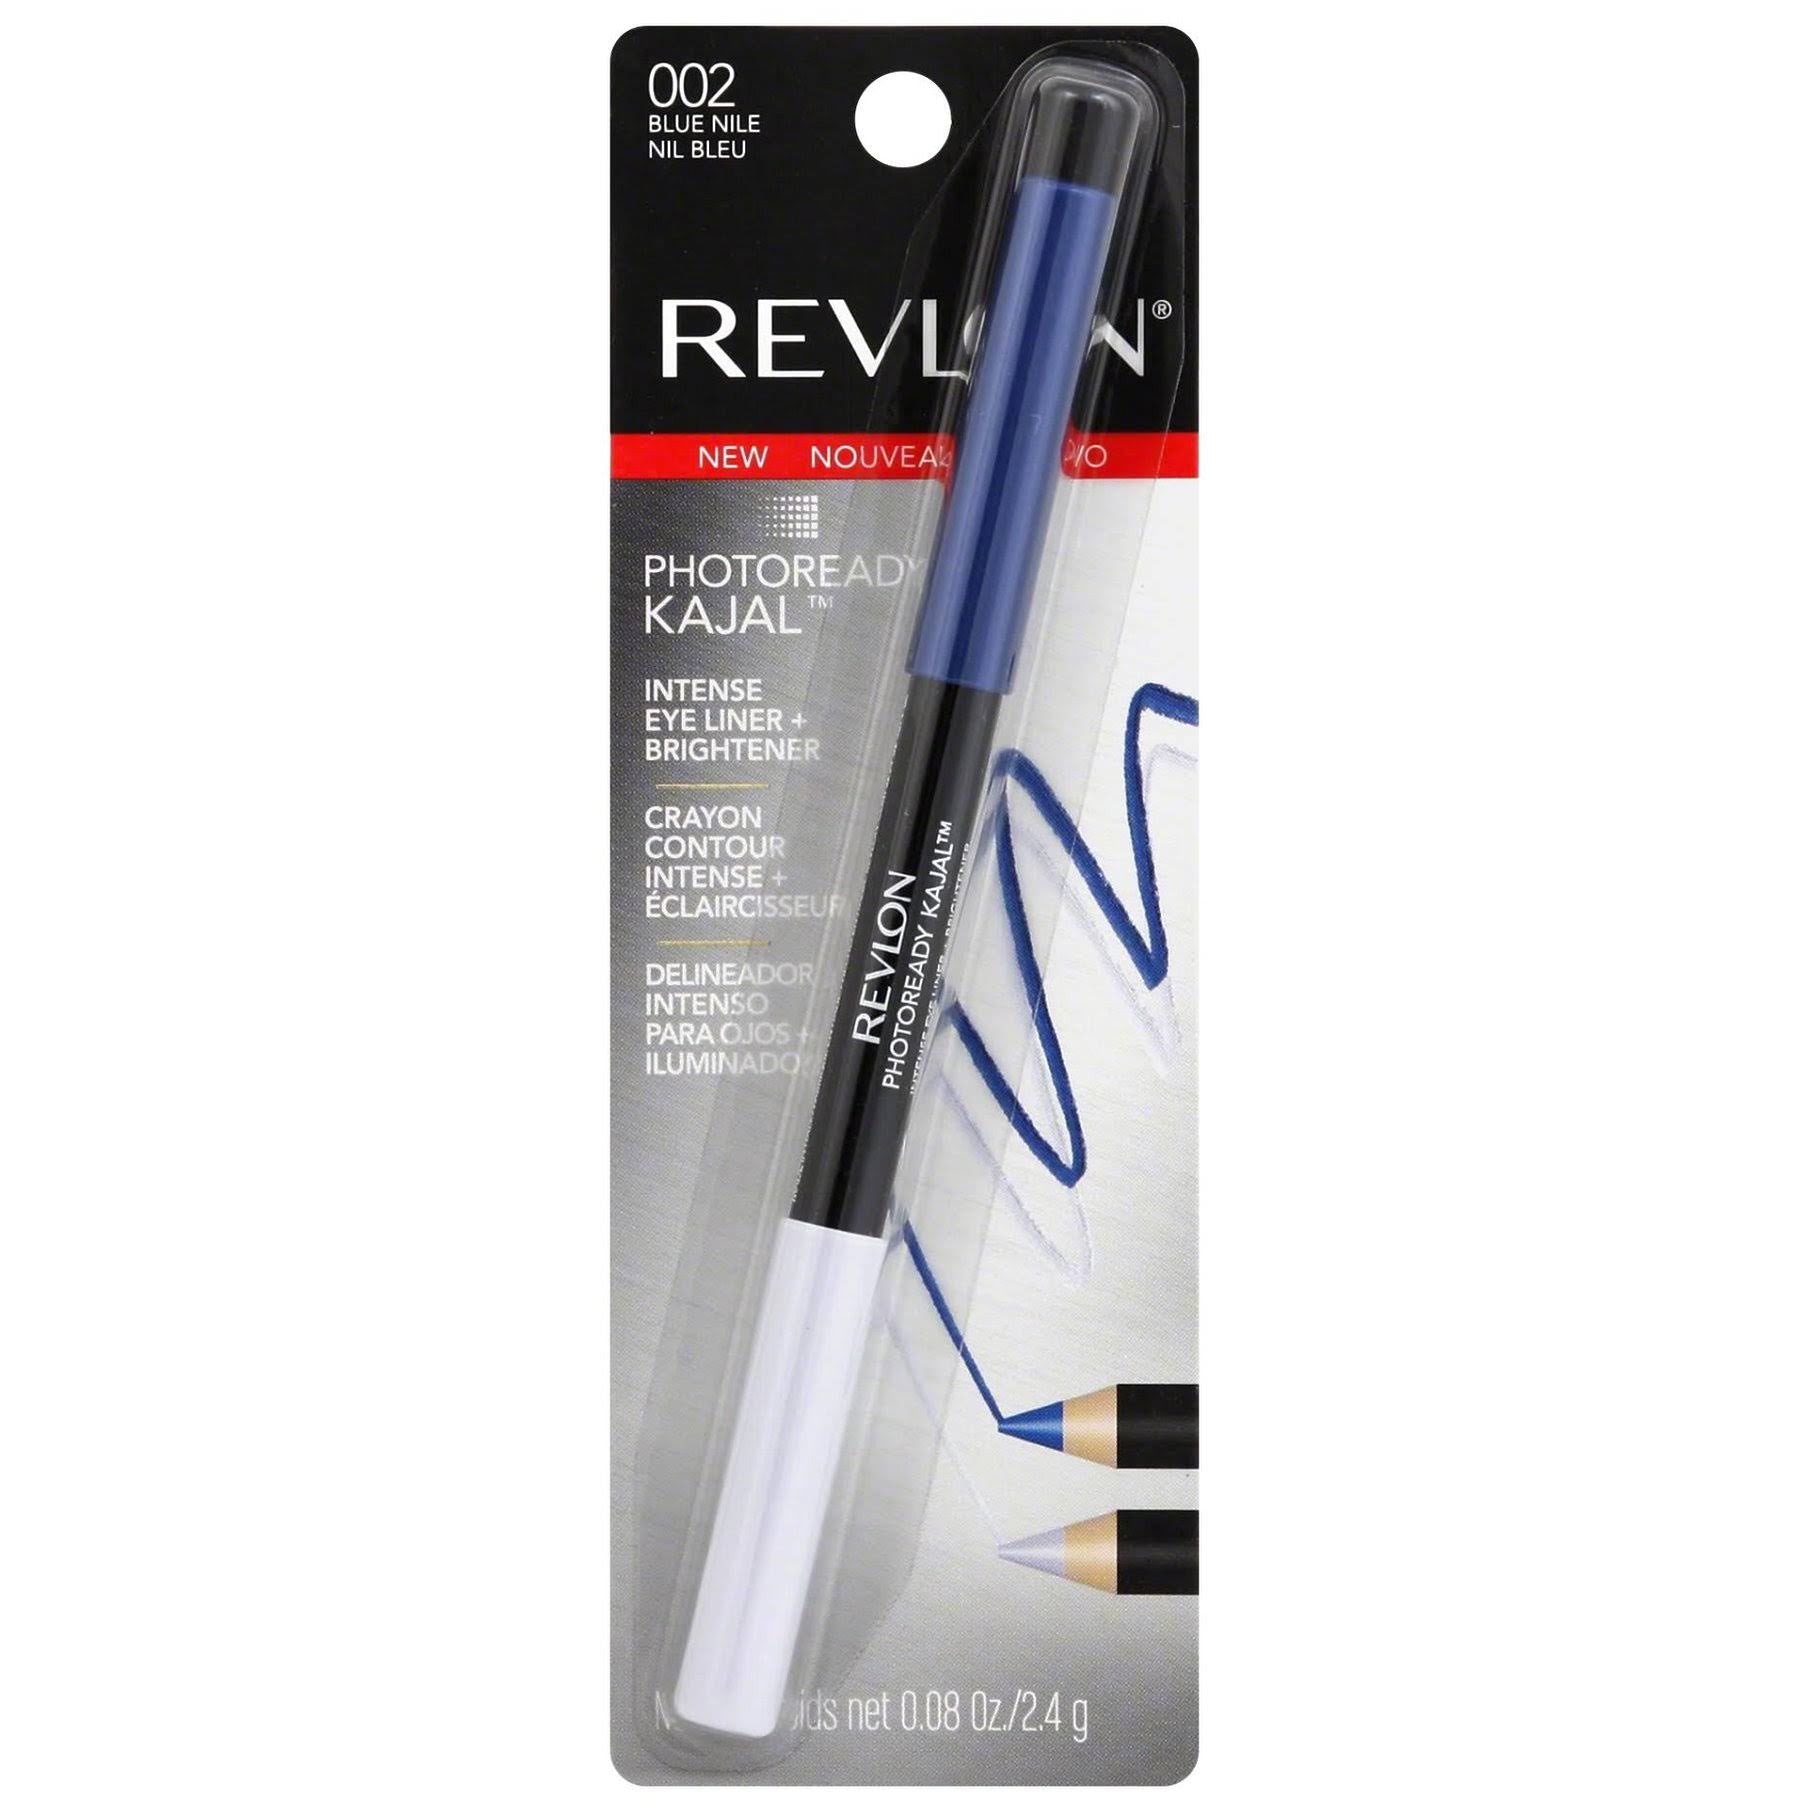 Revlon PhotoReady Kajal Intense Eye Liner & Brightener - Blue Nile 002 - ADDROS.COM